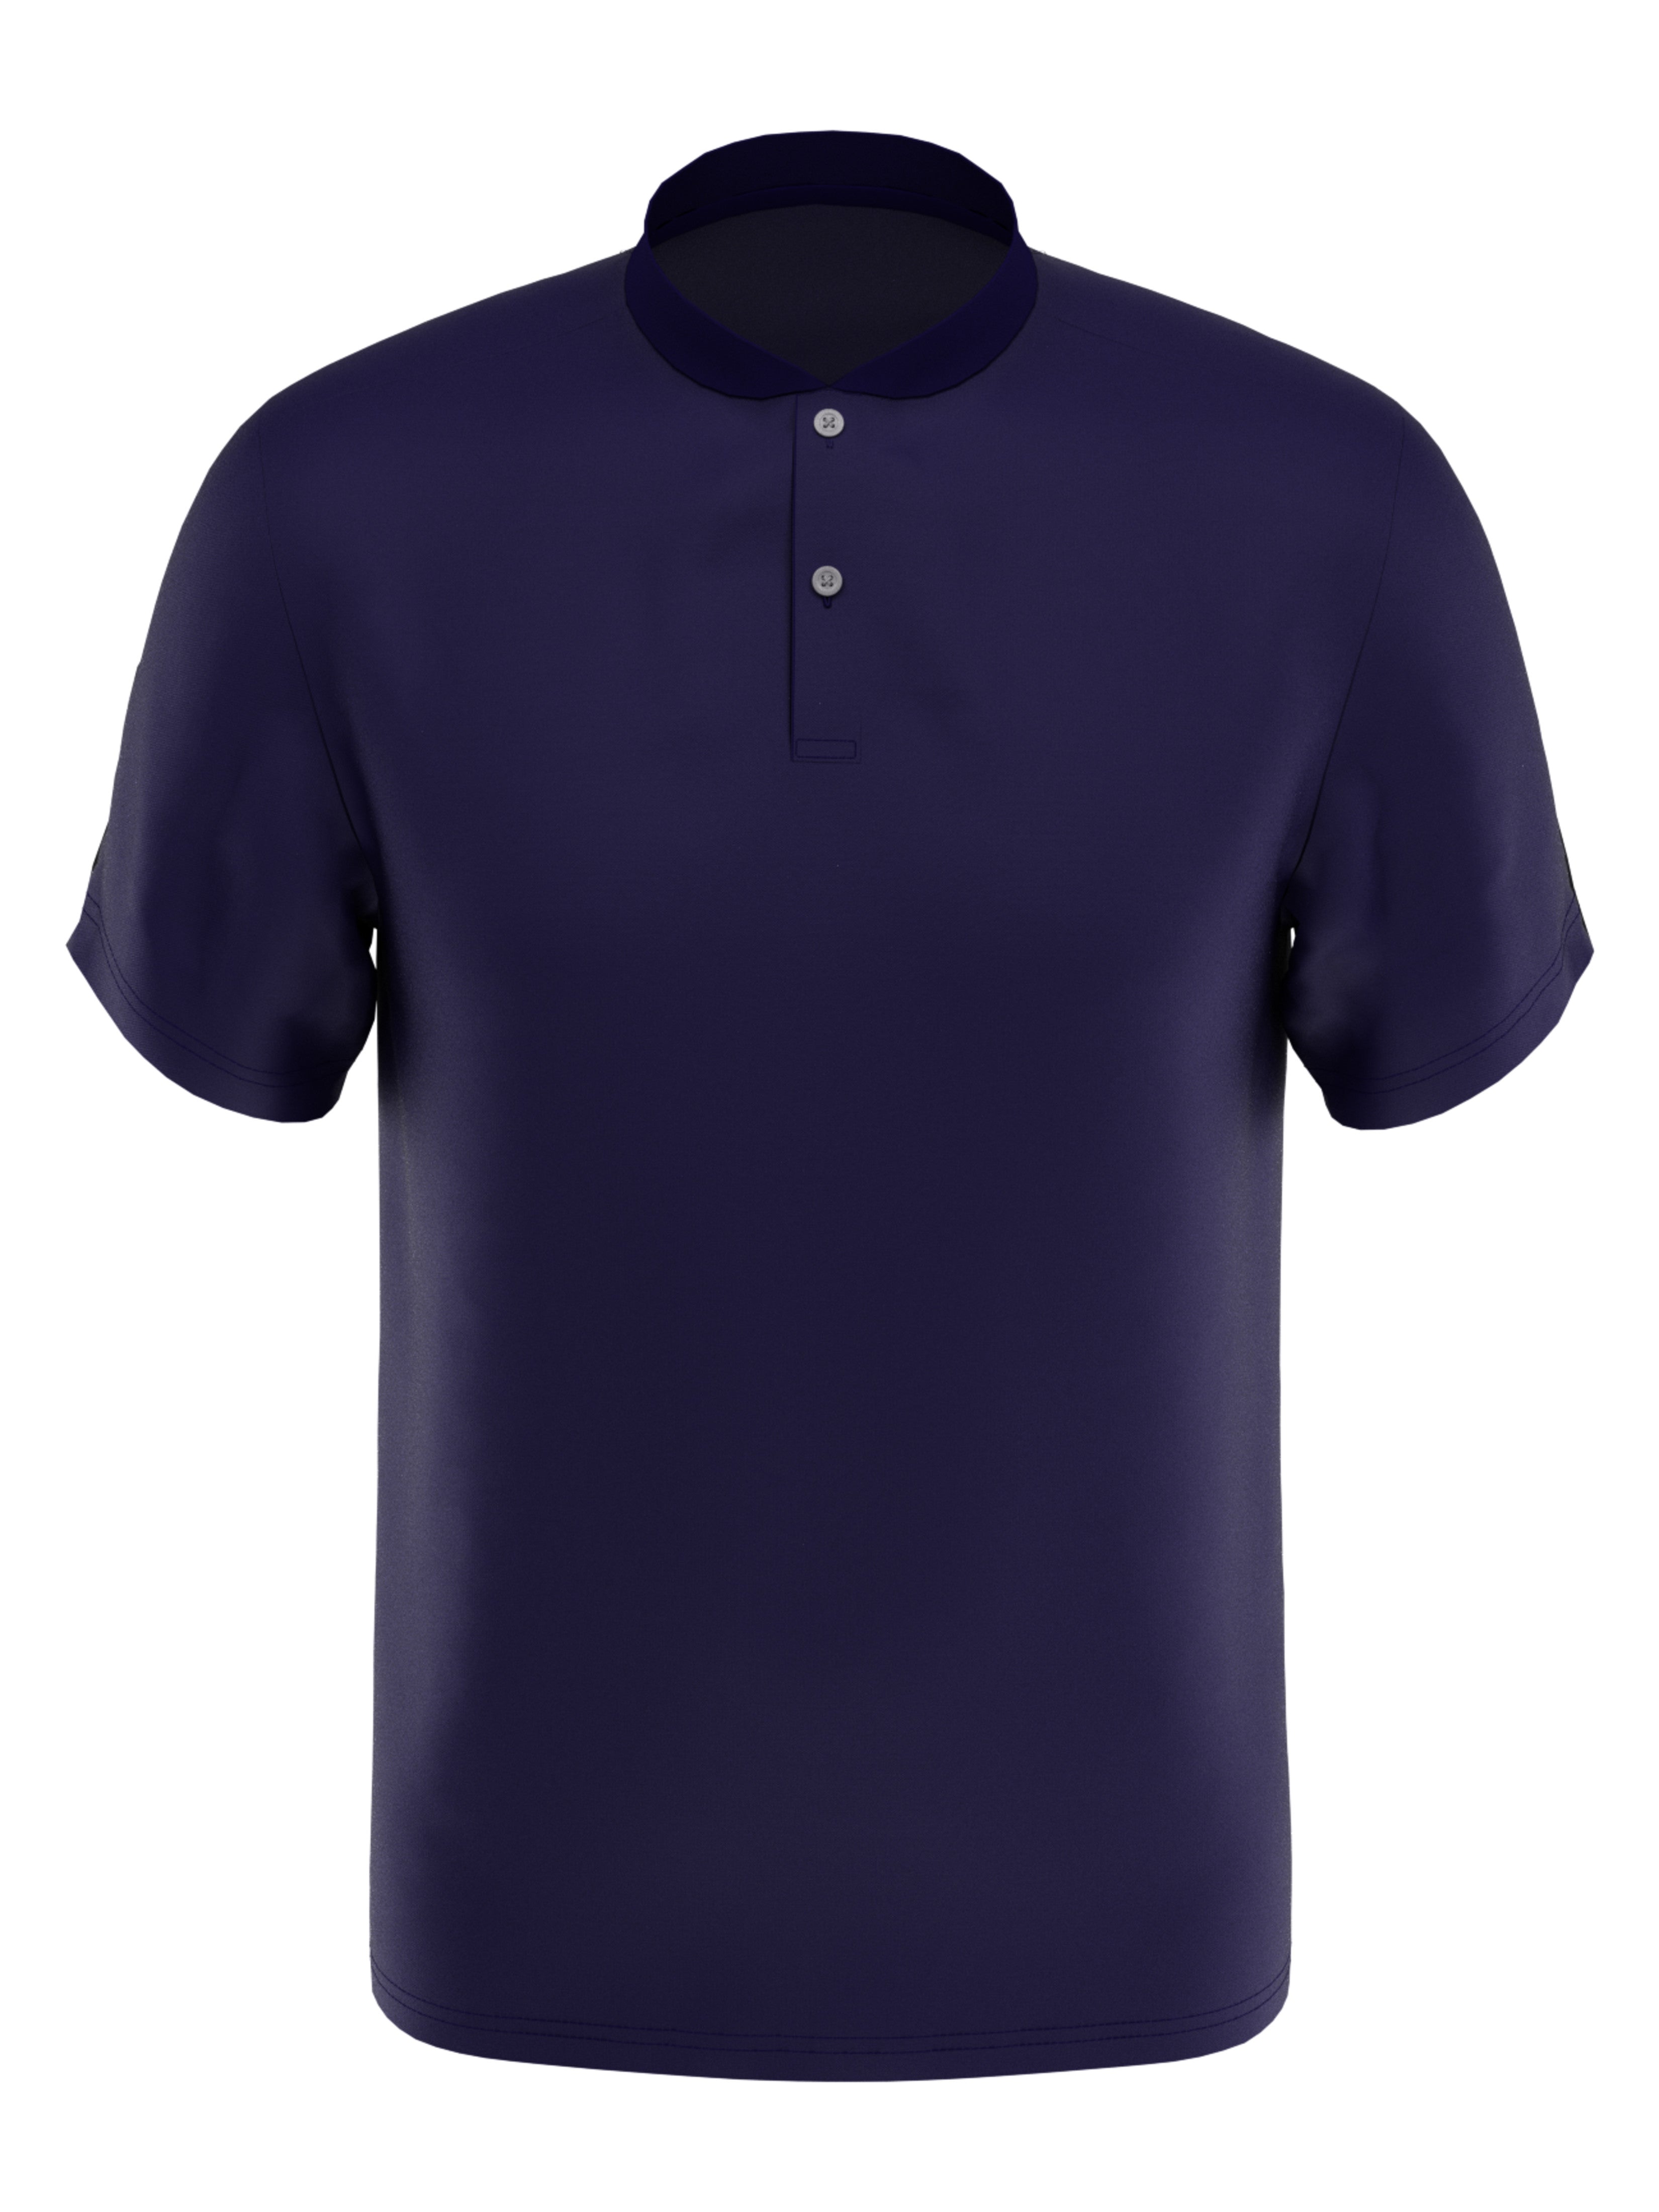 PGA TOUR Apparel Boys Edge Collar Pique Golf Polo Shirt, Size Small, Navy Blue, 100% Polyester | Golf Apparel Shop